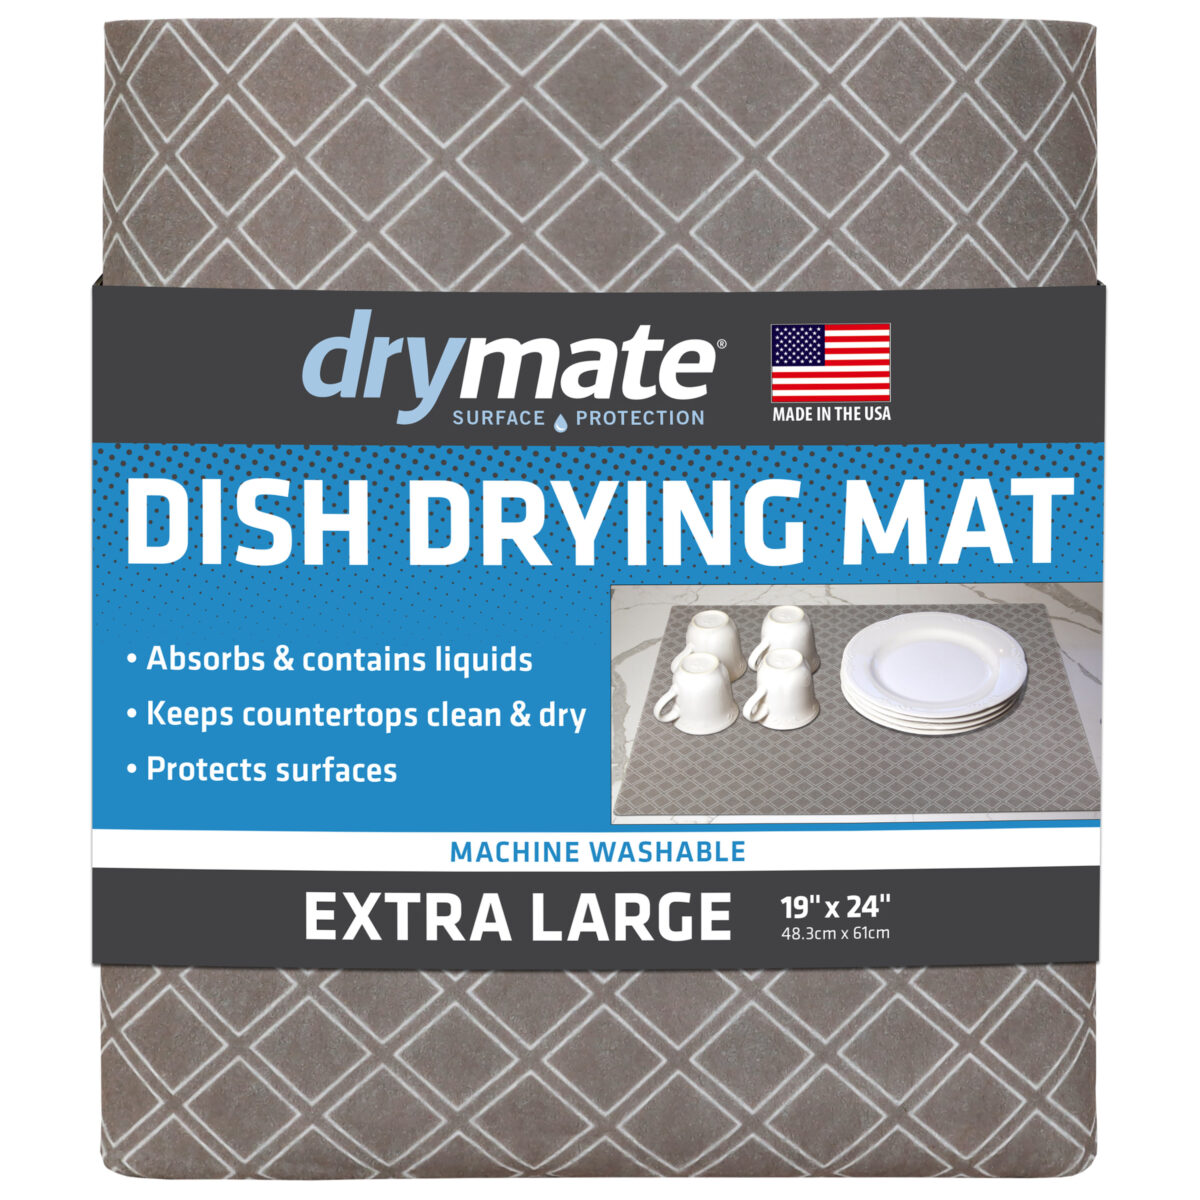 Drymate Dish Drying Mat